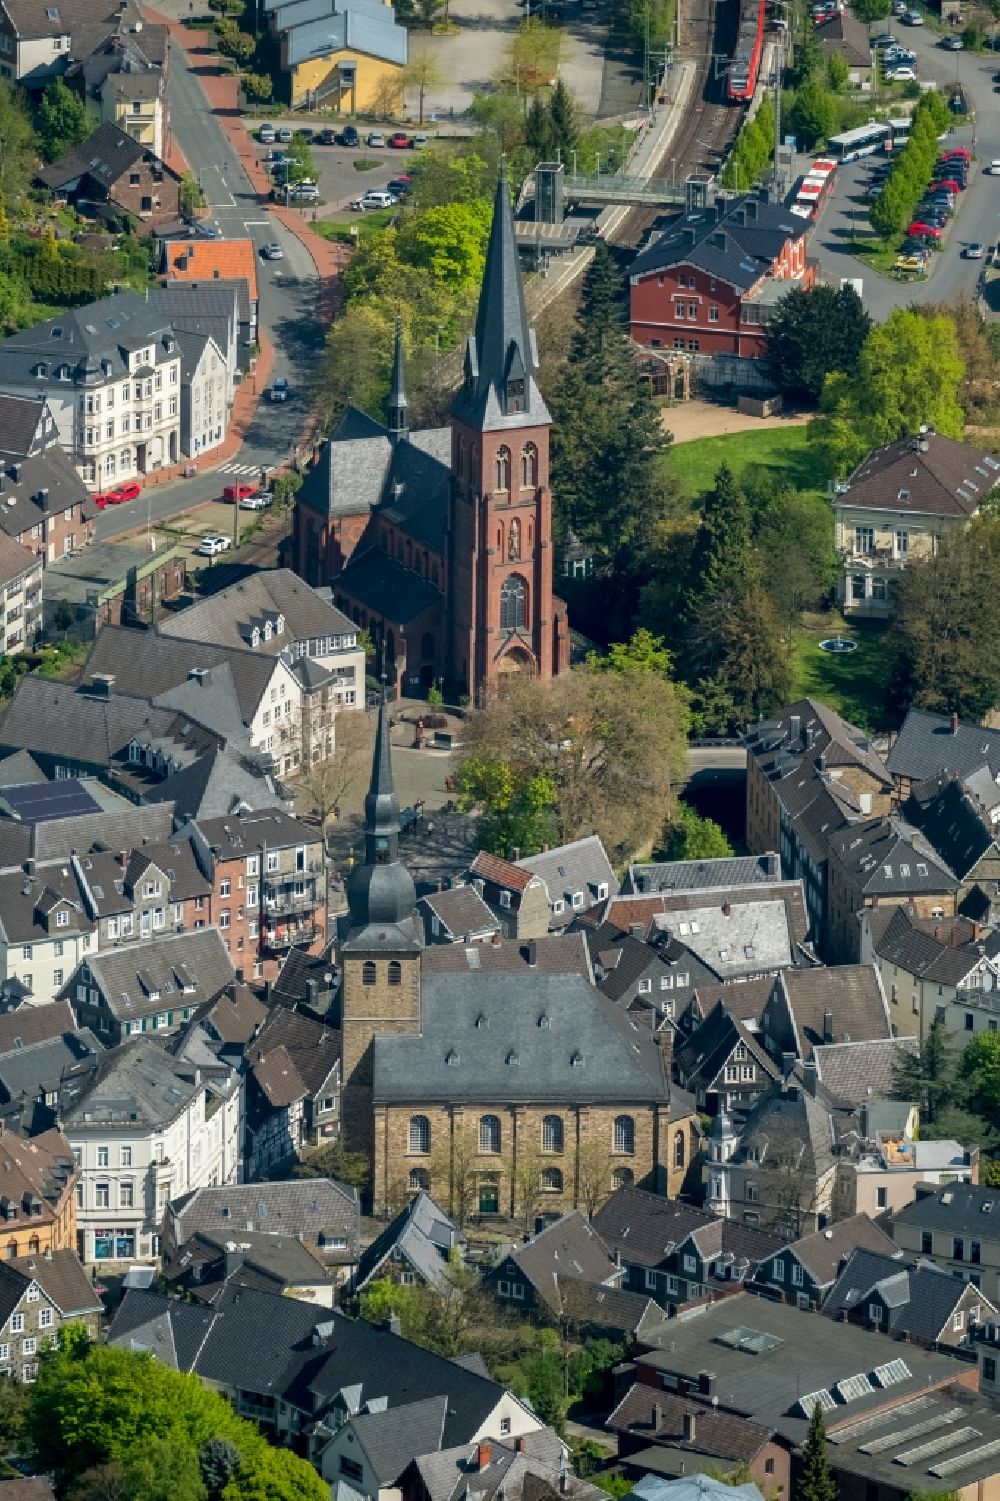 Velbert aus der Vogelperspektive: Kirchengebäude der St. Michael und die Alte Kirche in Velbert im Bundesland Nordrhein-Westfalen, Deutschland